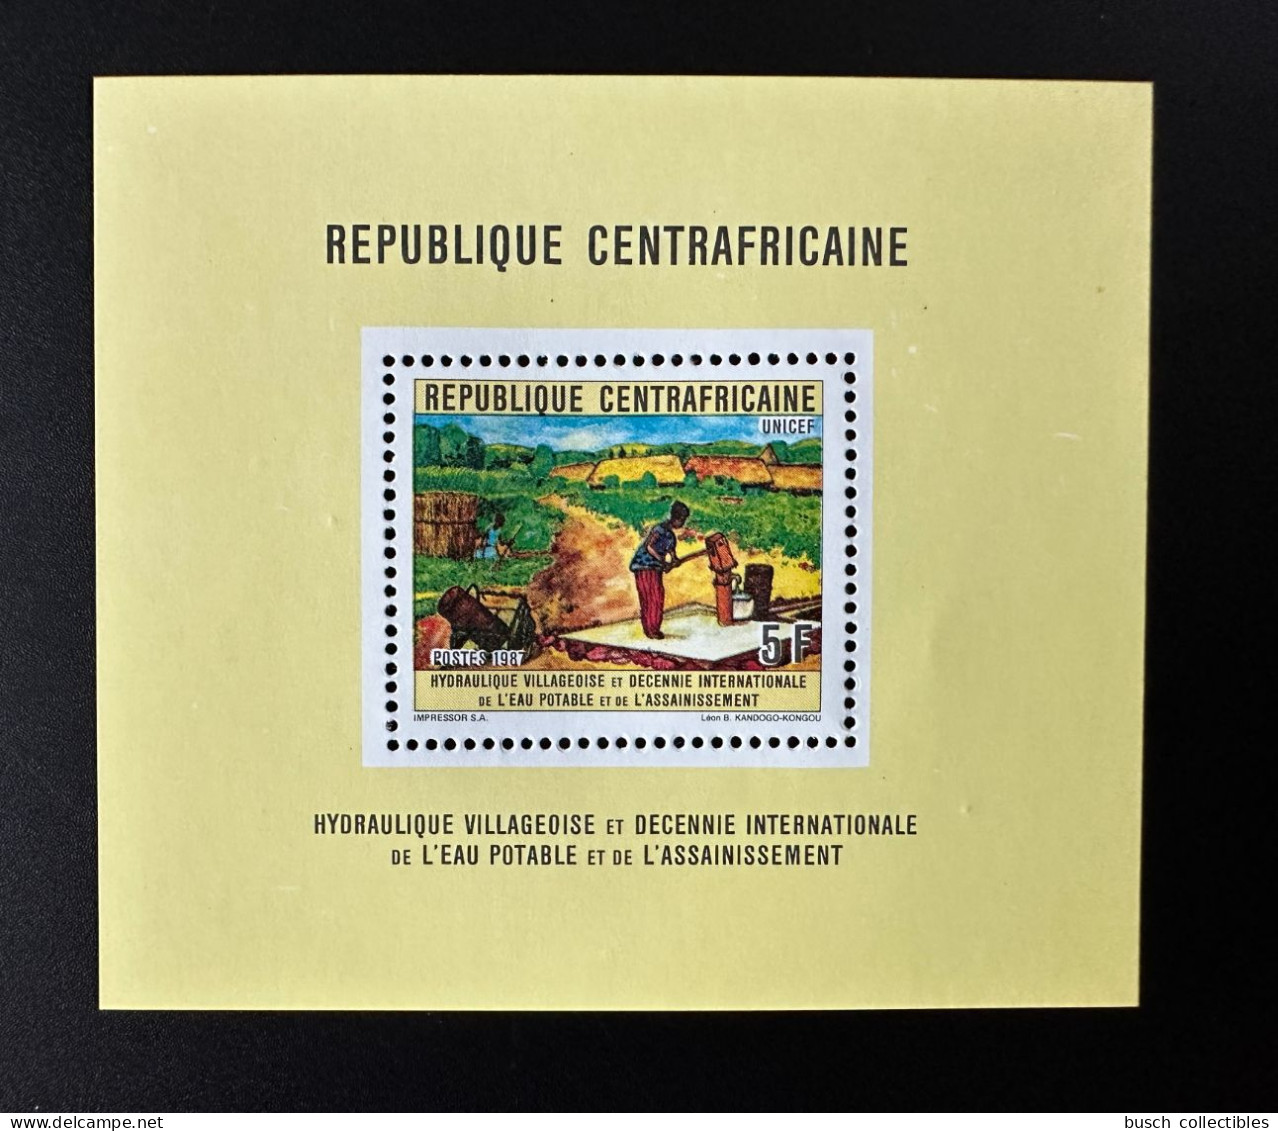 Centrafricaine Central Africa 1987 Mi. 1297 5F Bloc De Luxe Hydraulique Villageoise Décennie Eau Potable Assainissement - UNICEF